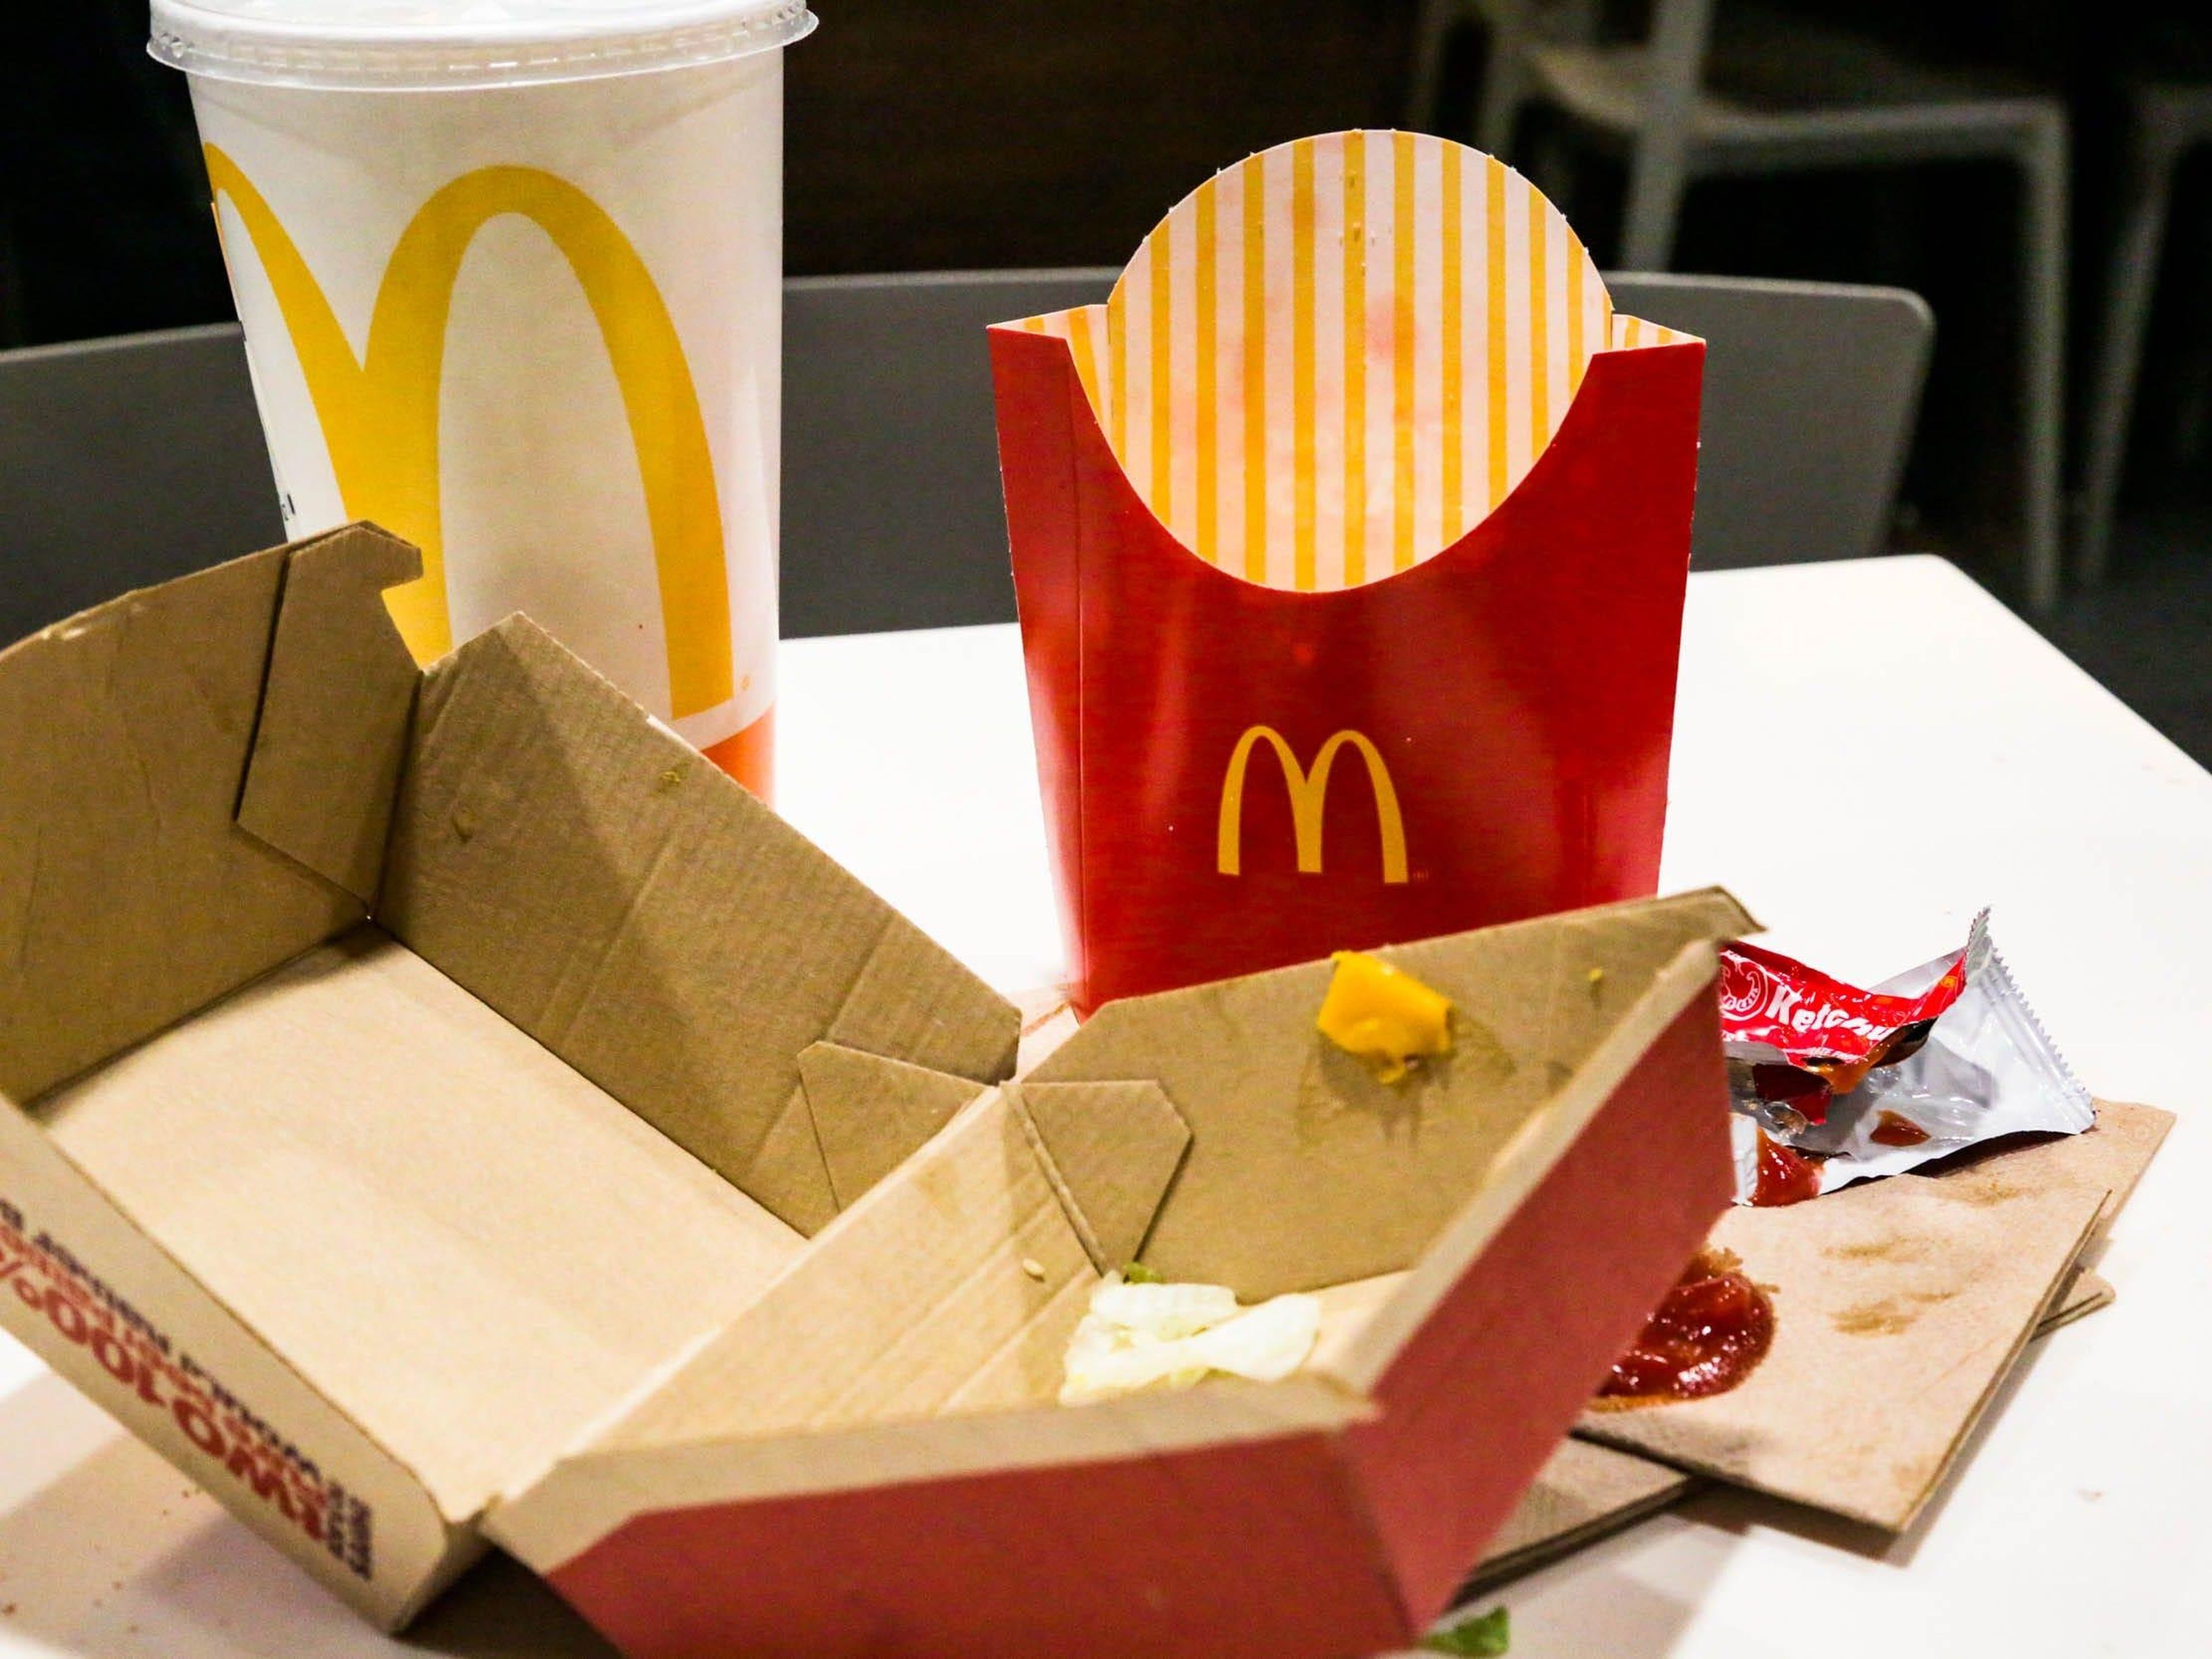 Los envases de McDonald's, Burger King y otros gigantes de la comida rápida contienen sustancias químicas tóxicas imperecederas, según un nuevo informe